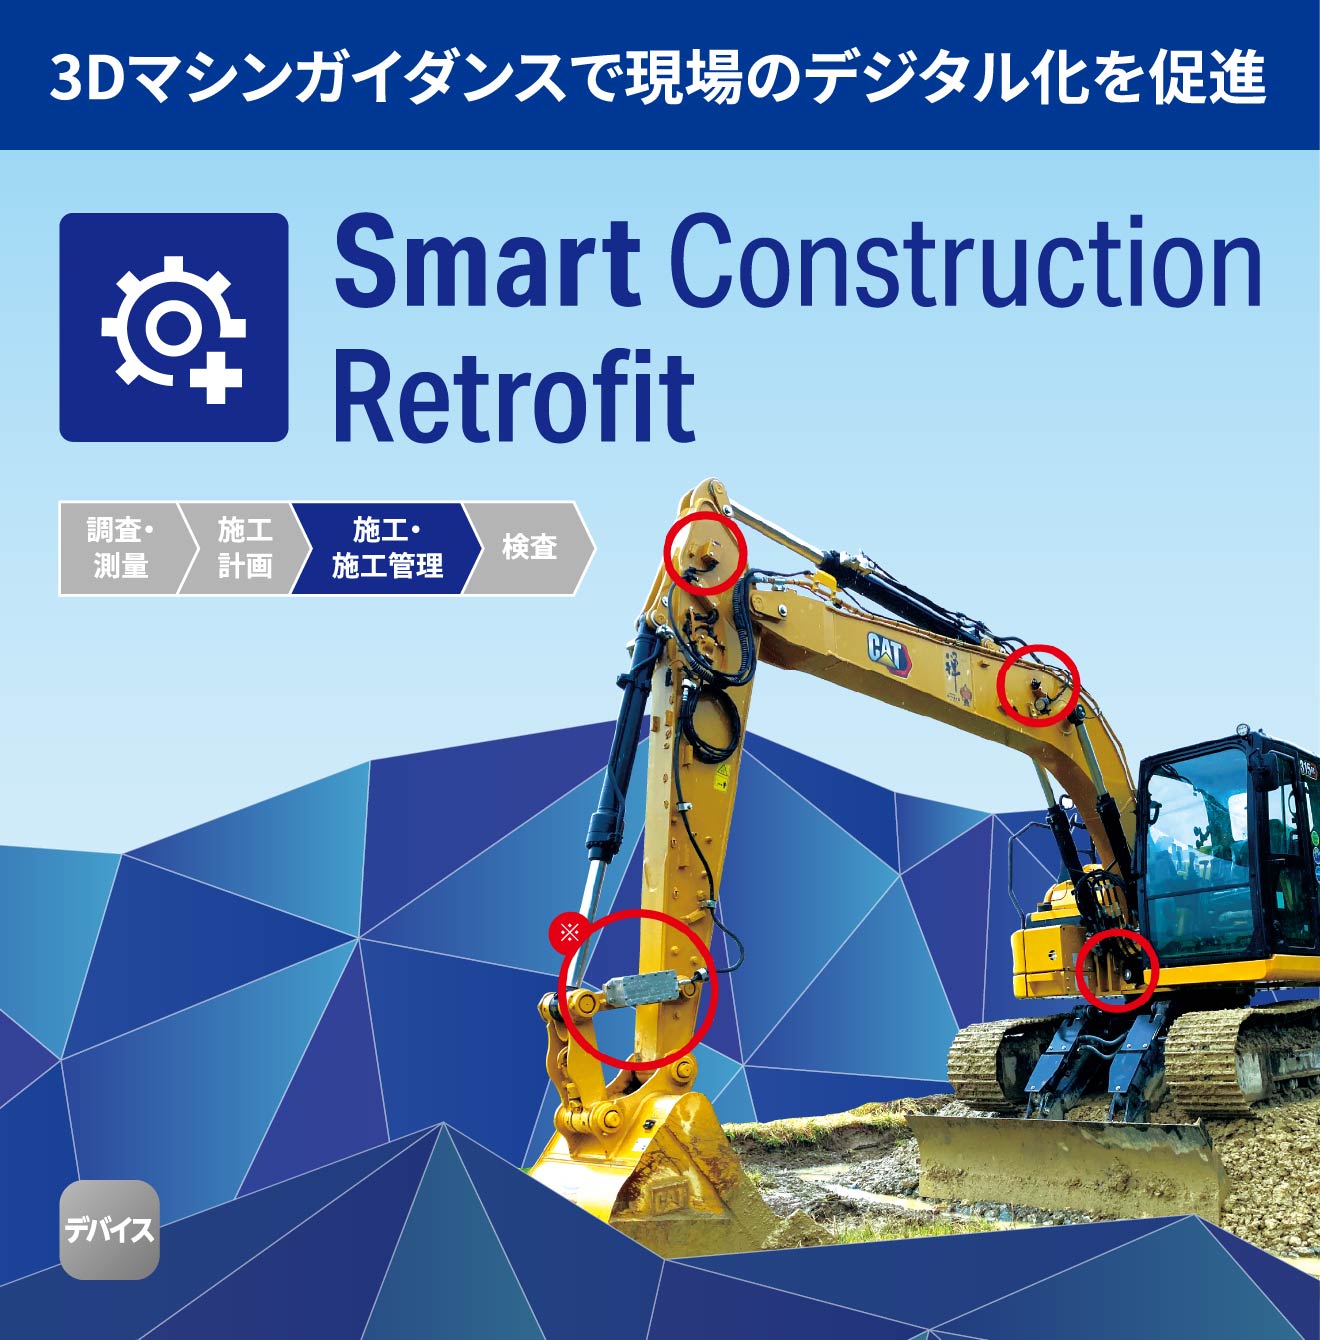 Smart Construction Retrofit